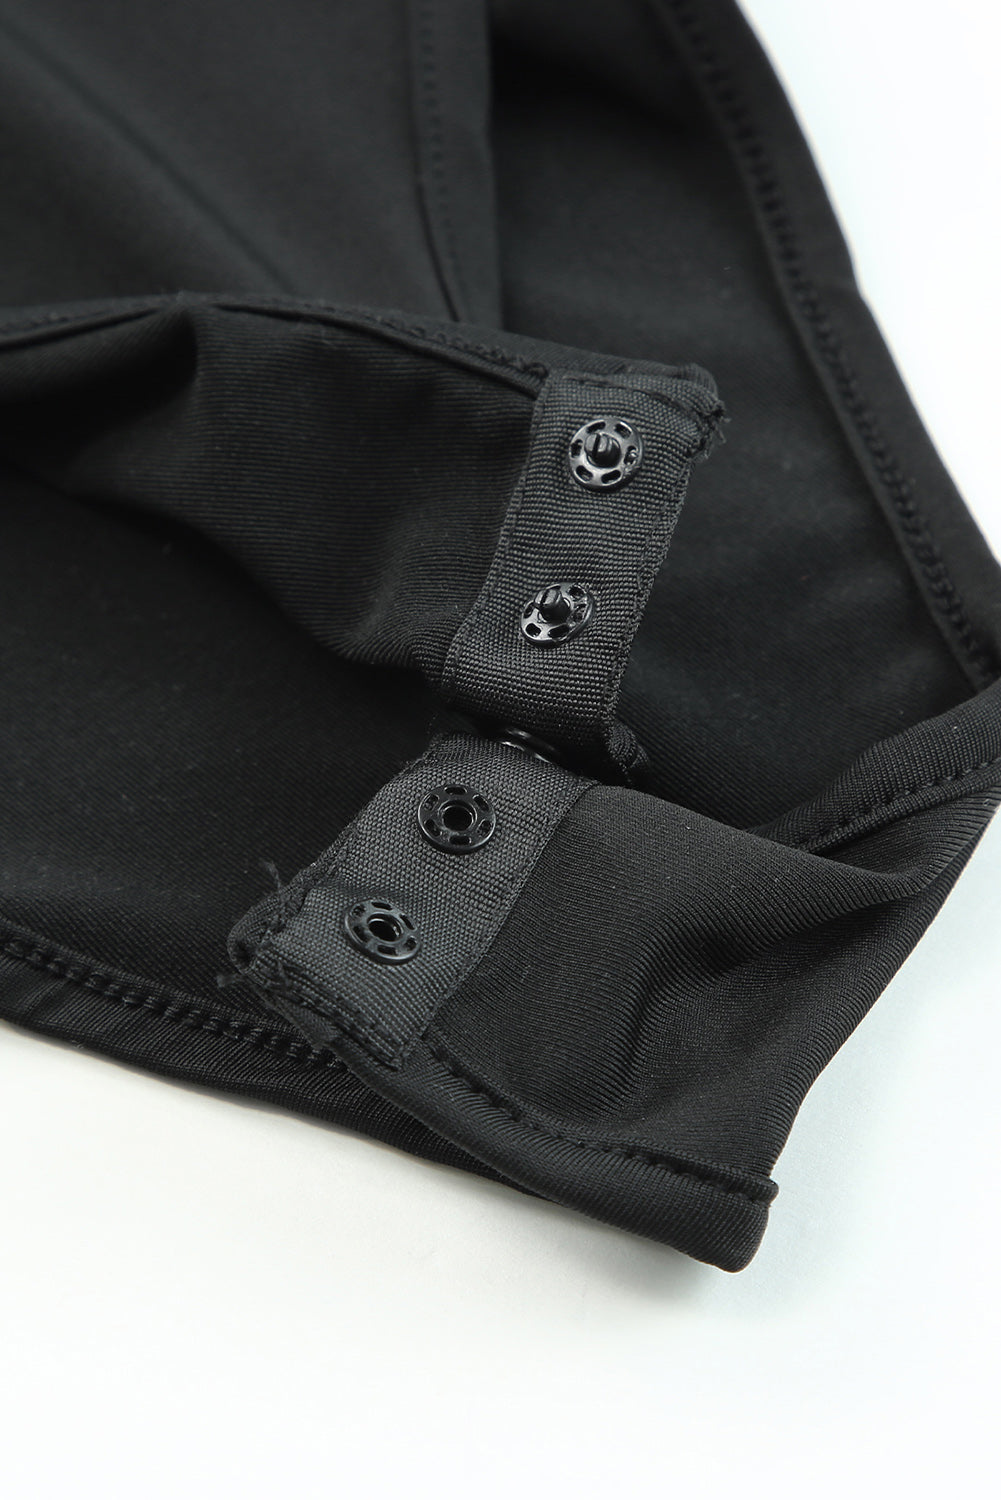 Black Satin Leopard Print Tie Shoulder V Neck Bodysuit